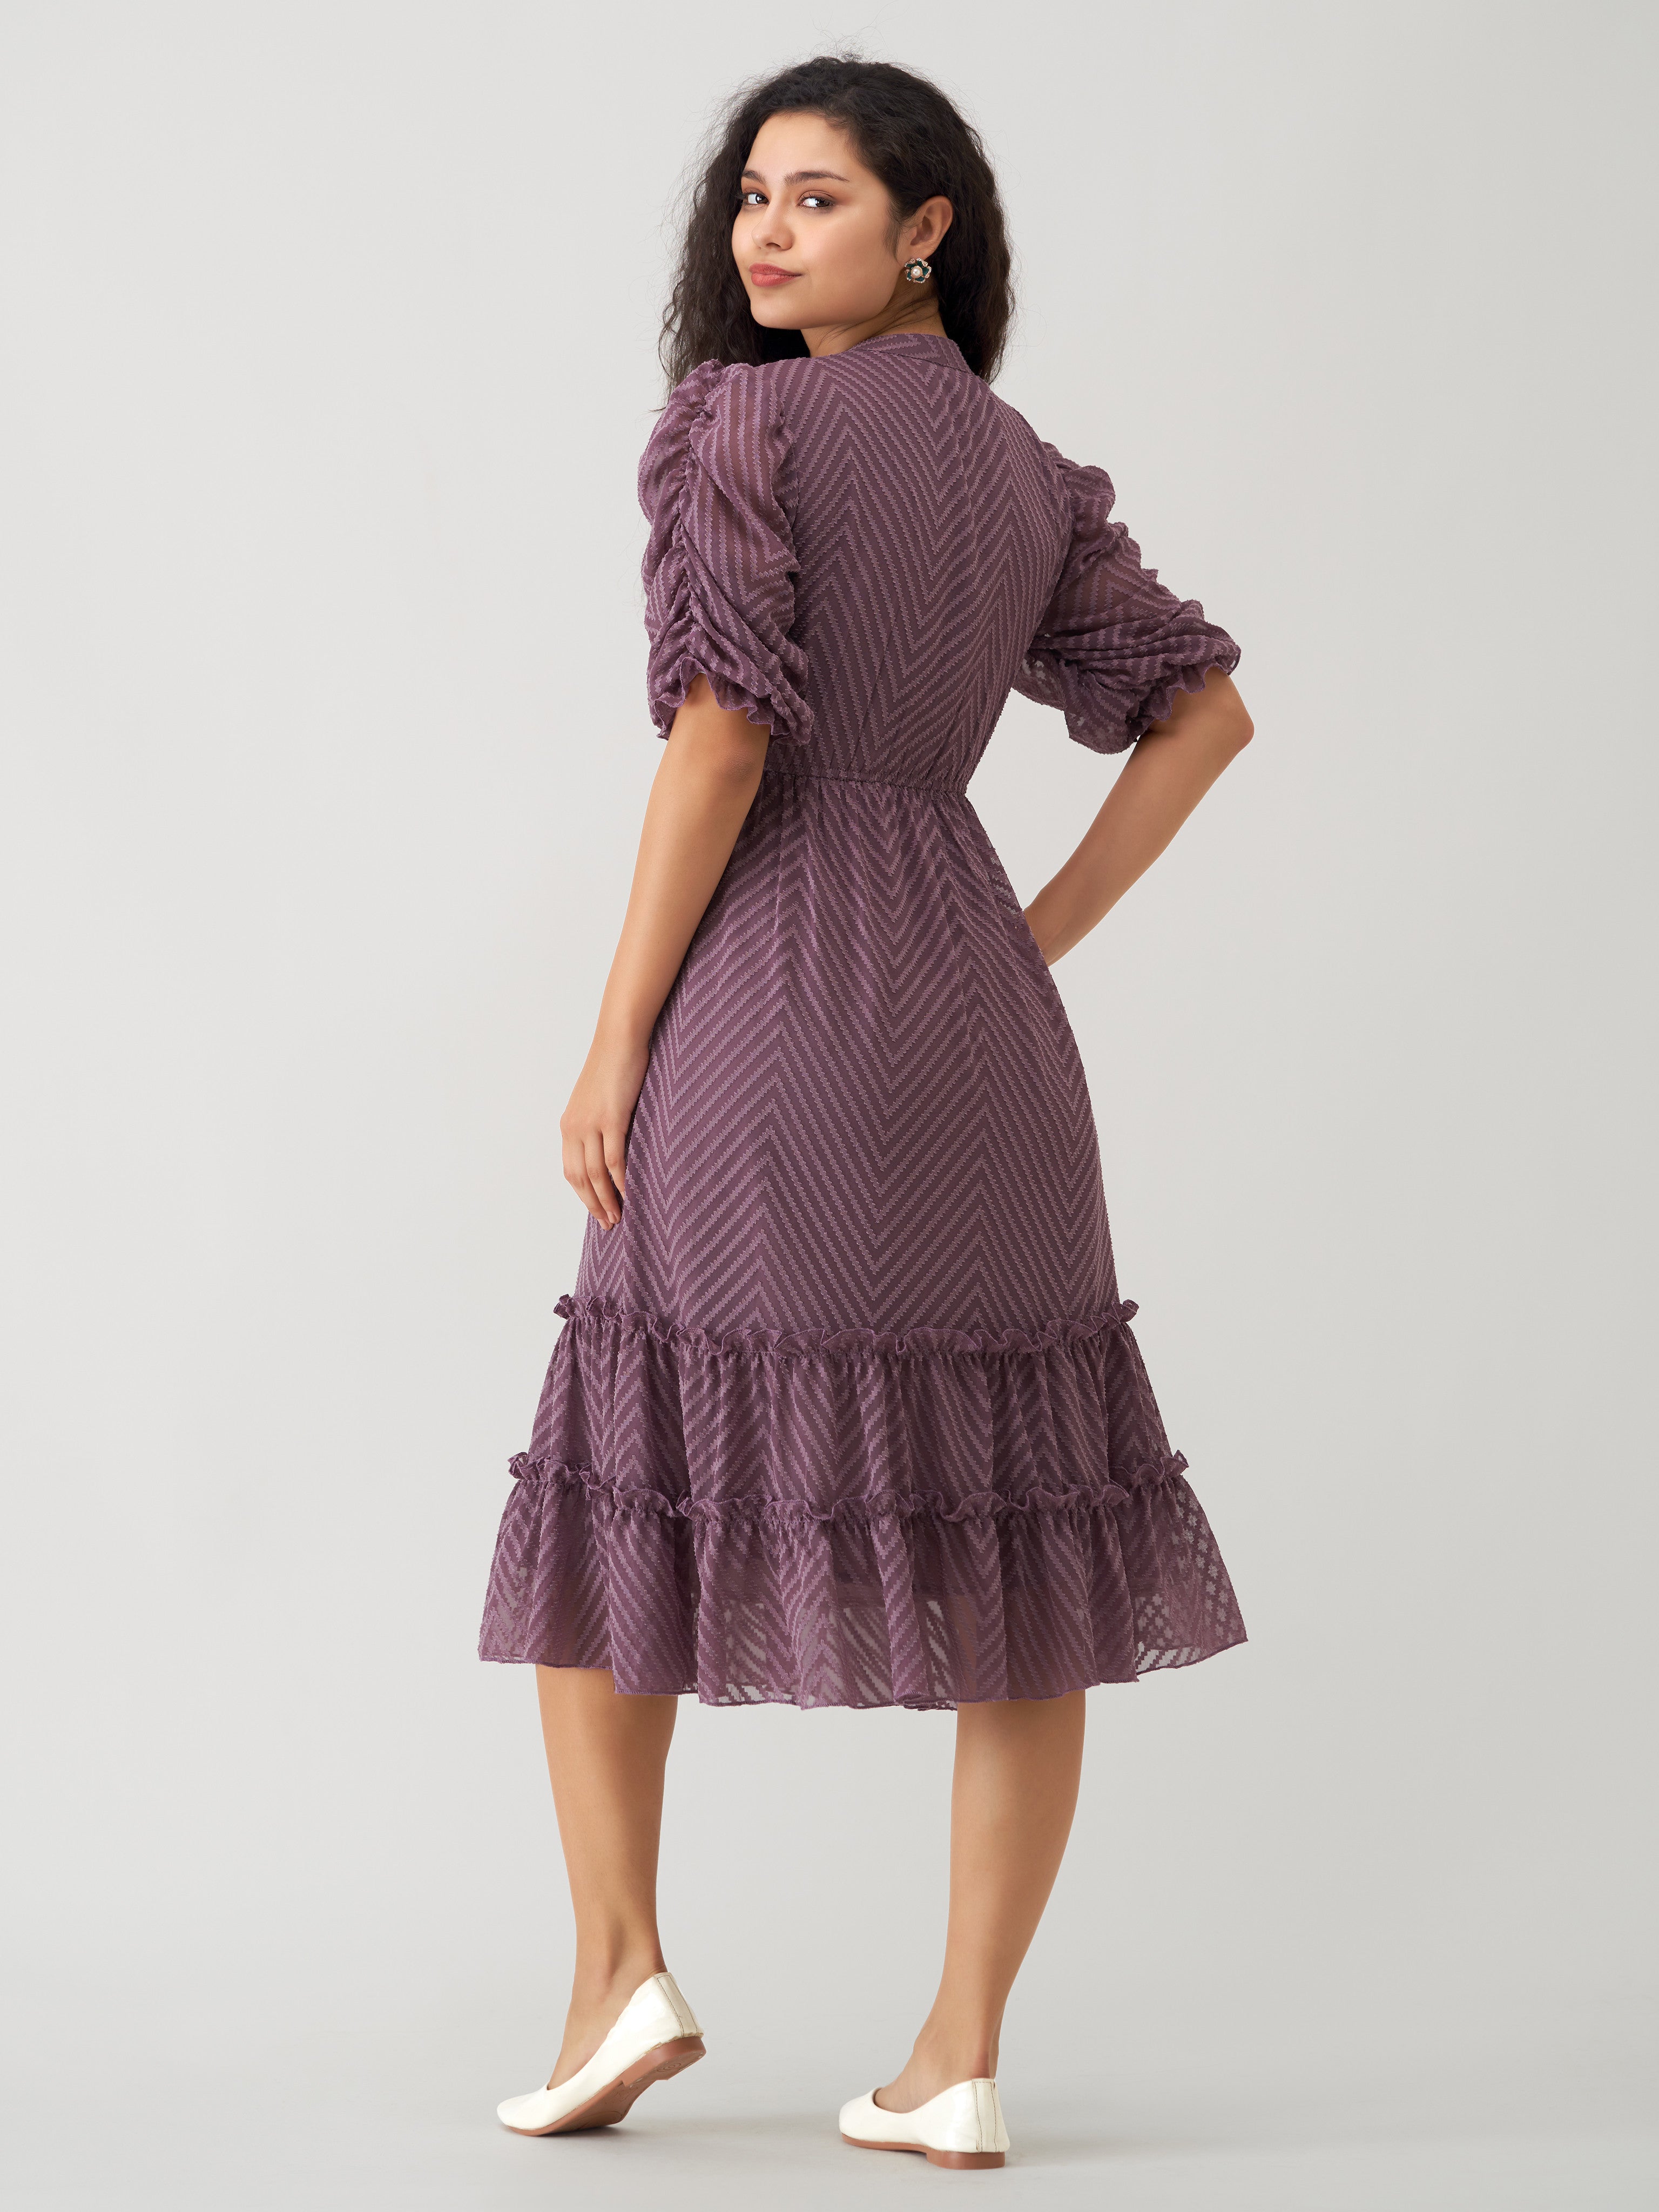 Dull Purple Chiffon Brasso Swiss Dot High Neck Dress